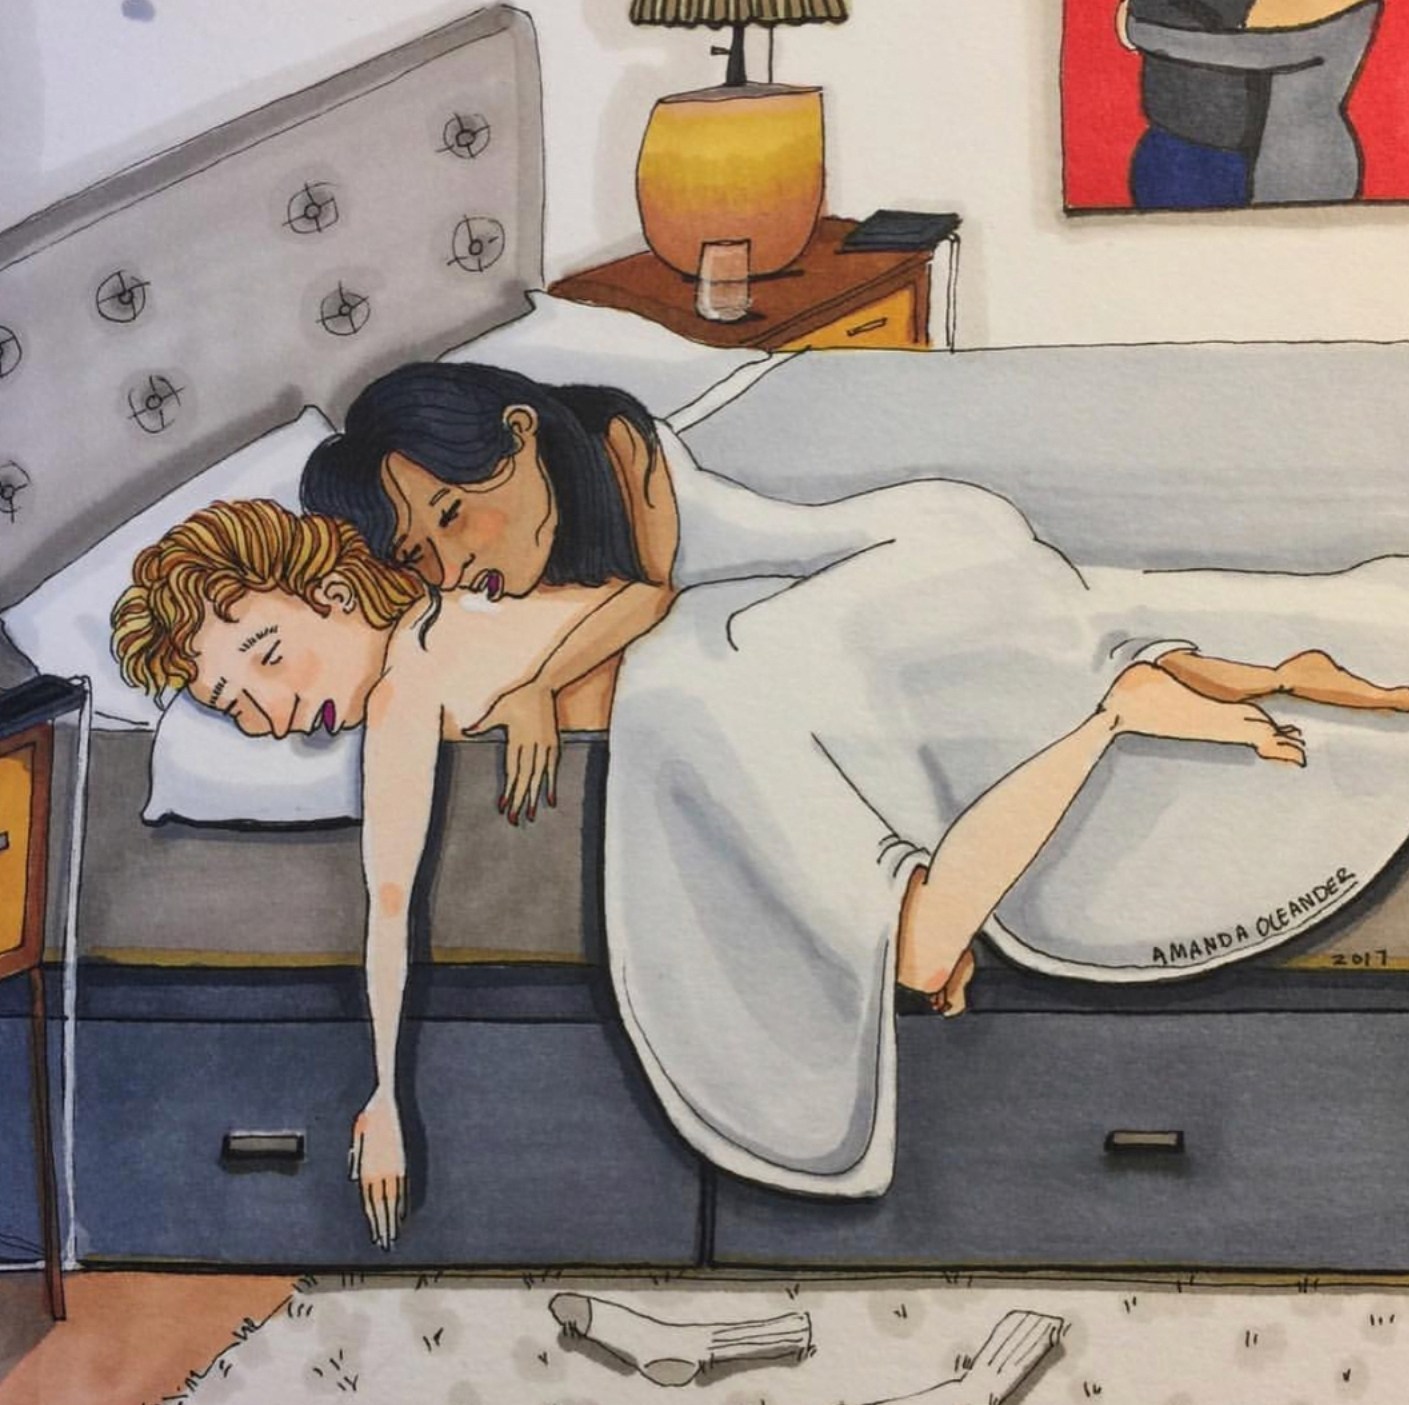 Жена укладывает мужу спать. Художница Amanda Oleander. Сон иллюстрация.